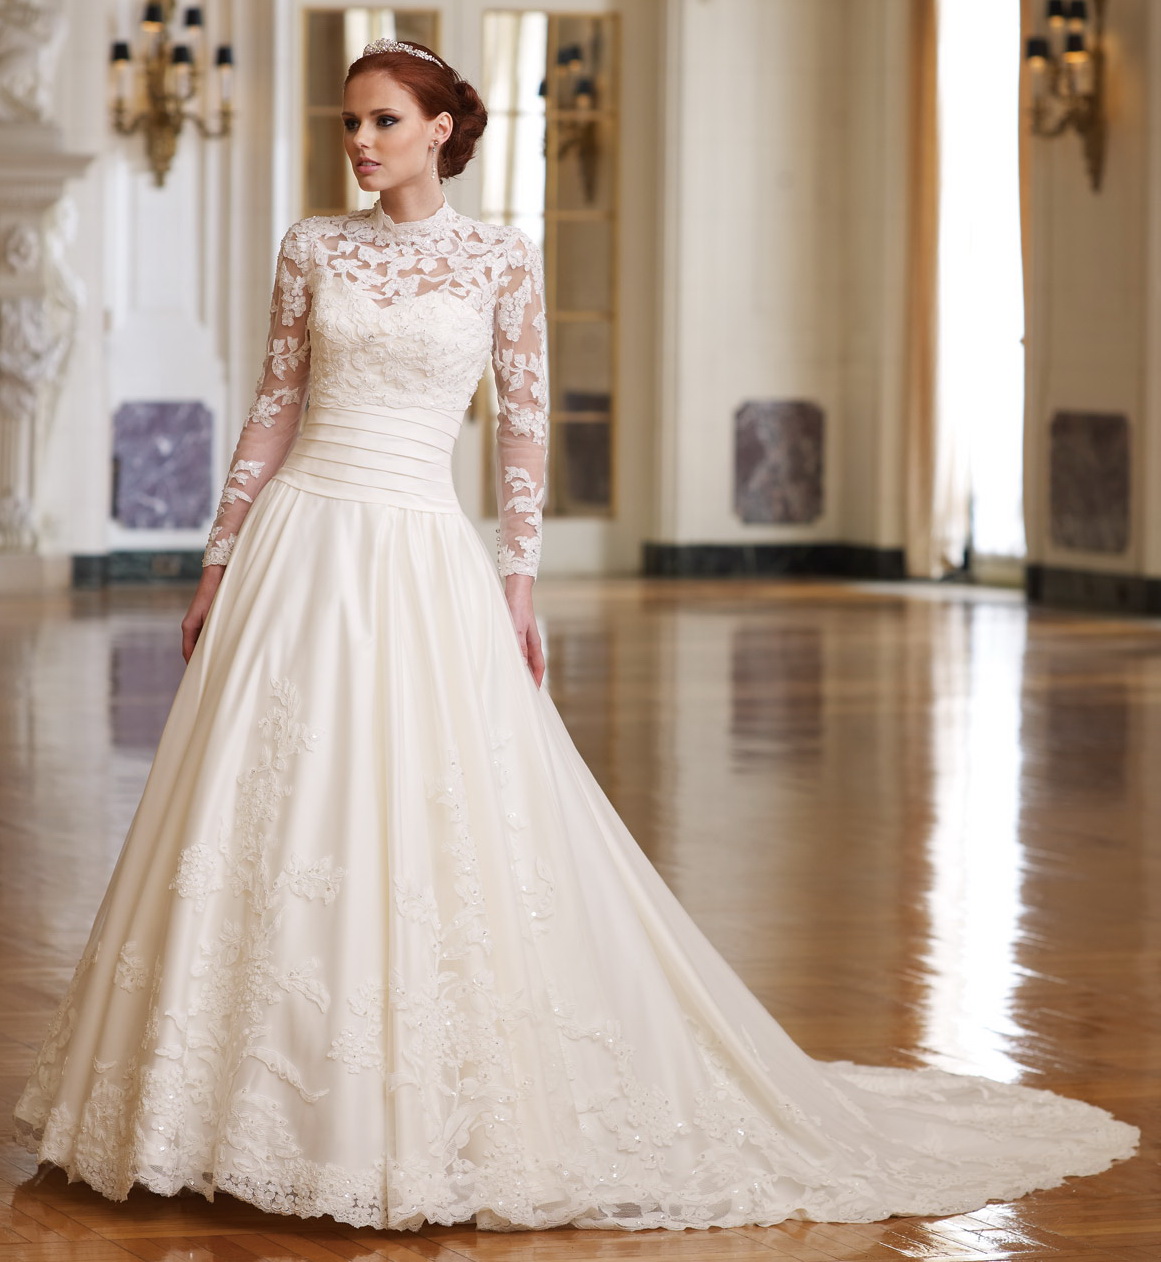 Floor Length Dresses For Weddings : Simple Guide To Choosing